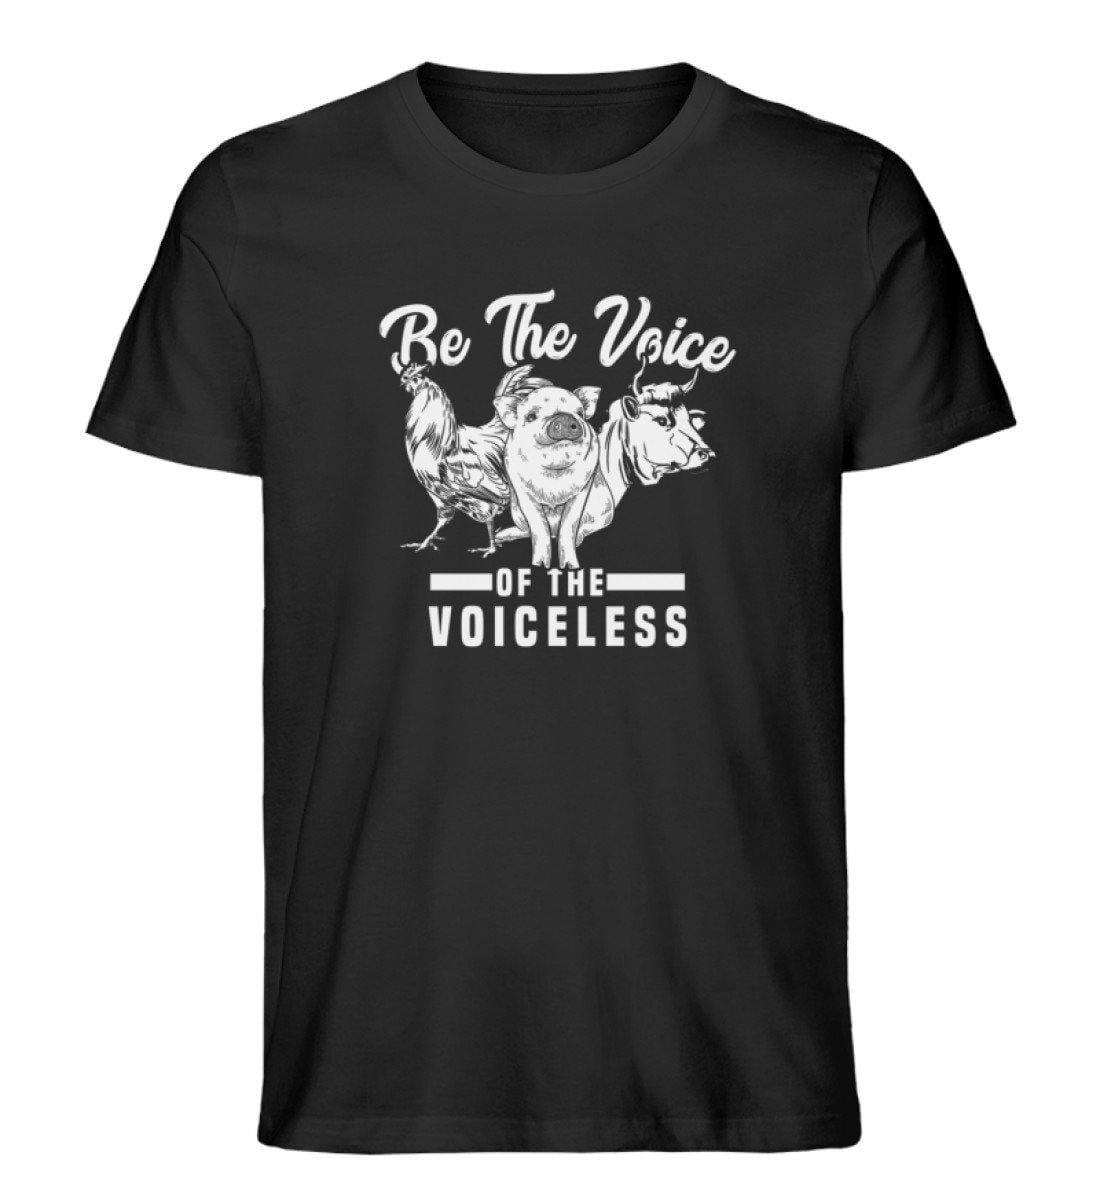 Be The Voice of the voiceless - Unisex Organic Shirt Rocker T-Shirt ST/ST Shirtee Schwarz S 